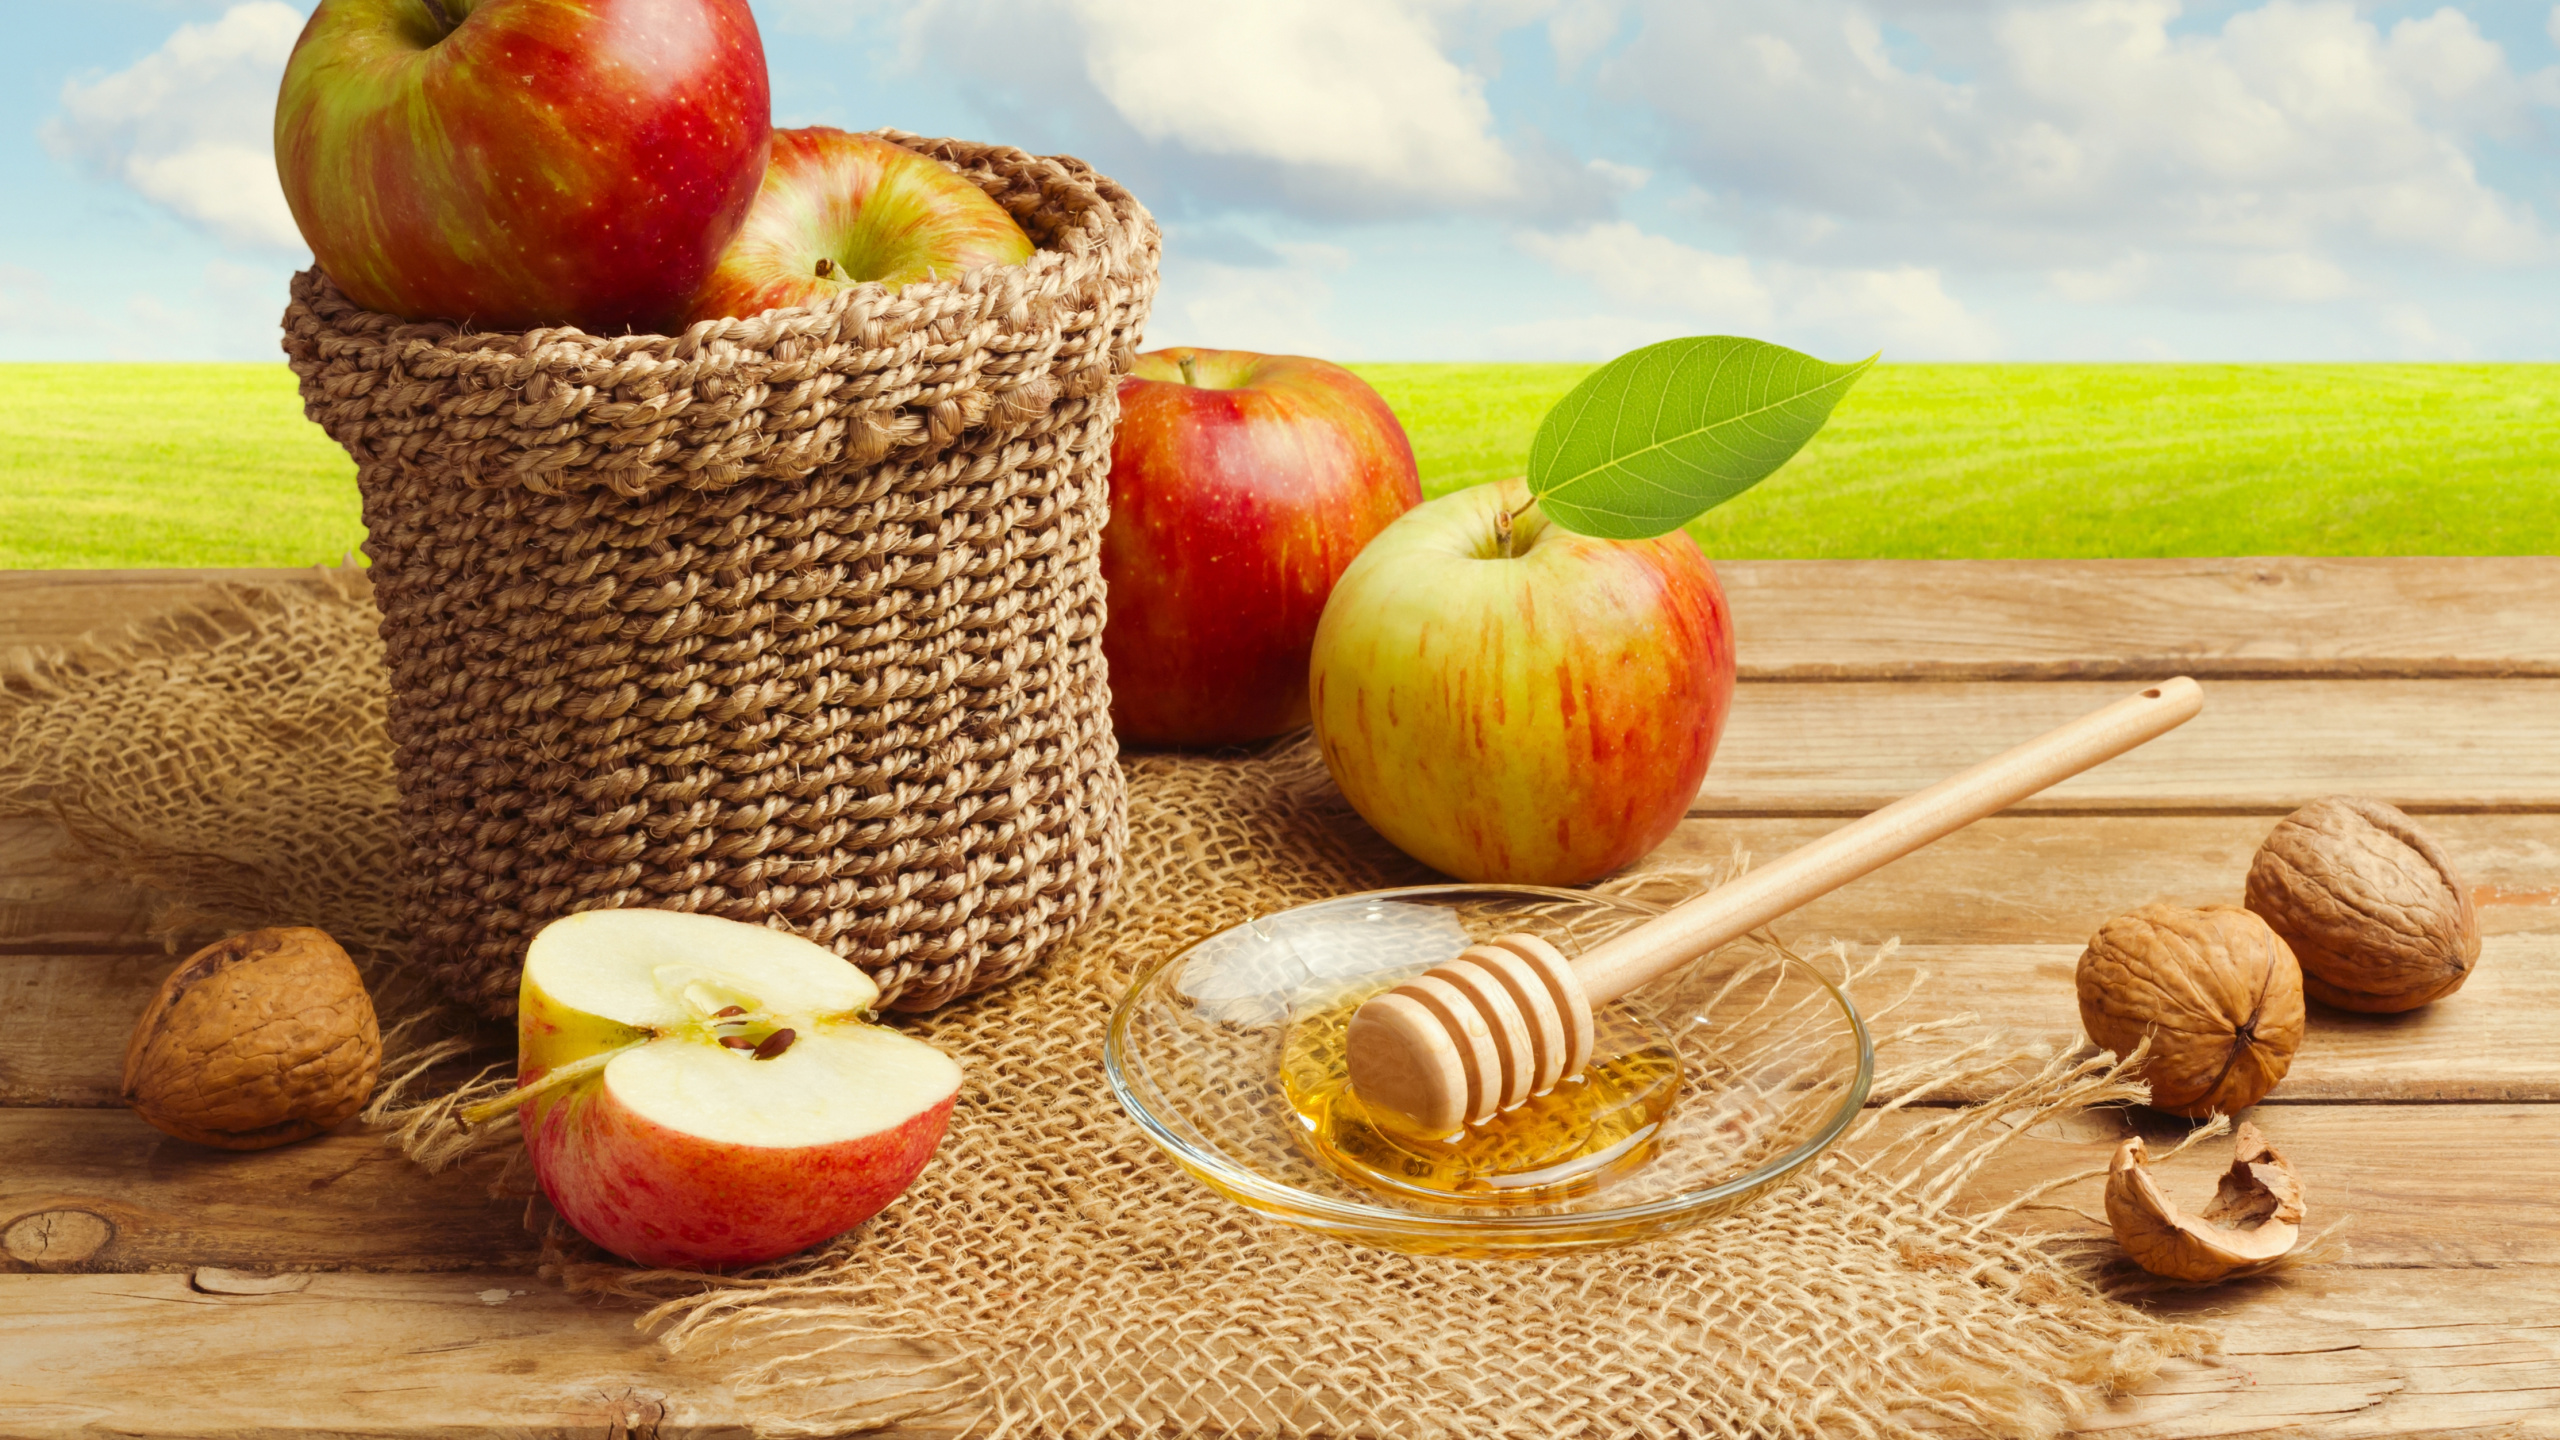 Apple, 食品, 天然的食物, 仍然生活, 饮食的食物 壁纸 2560x1440 允许